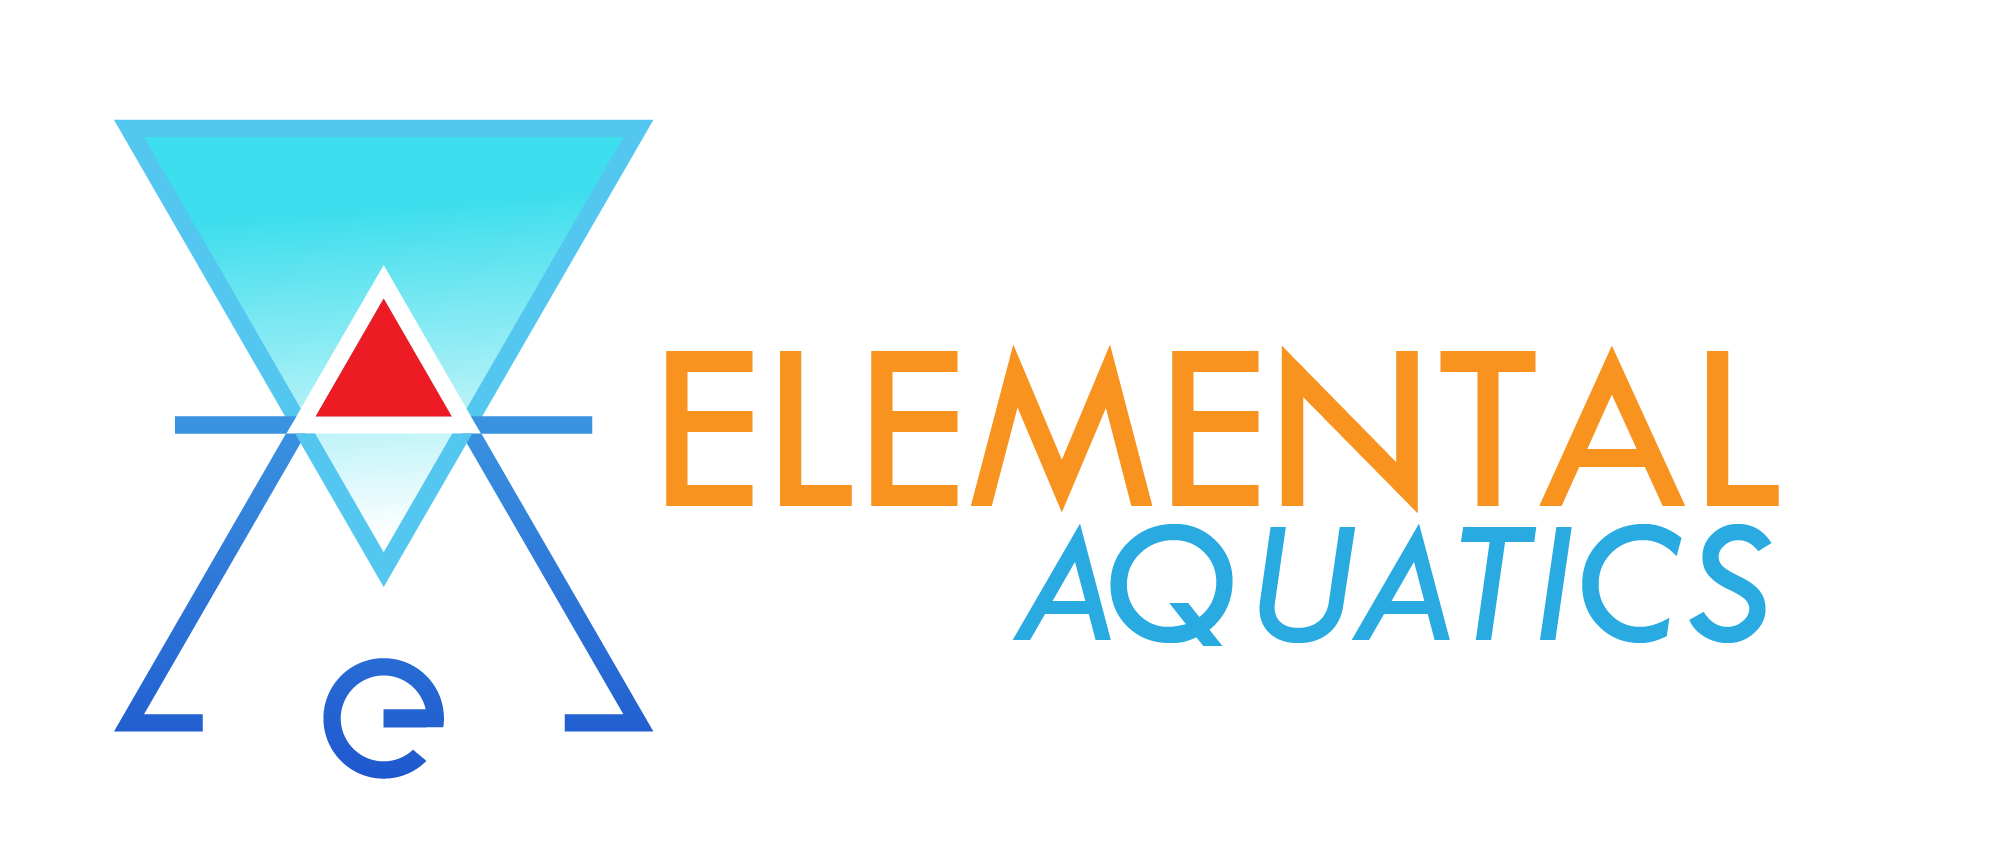 Elemental Aquatics